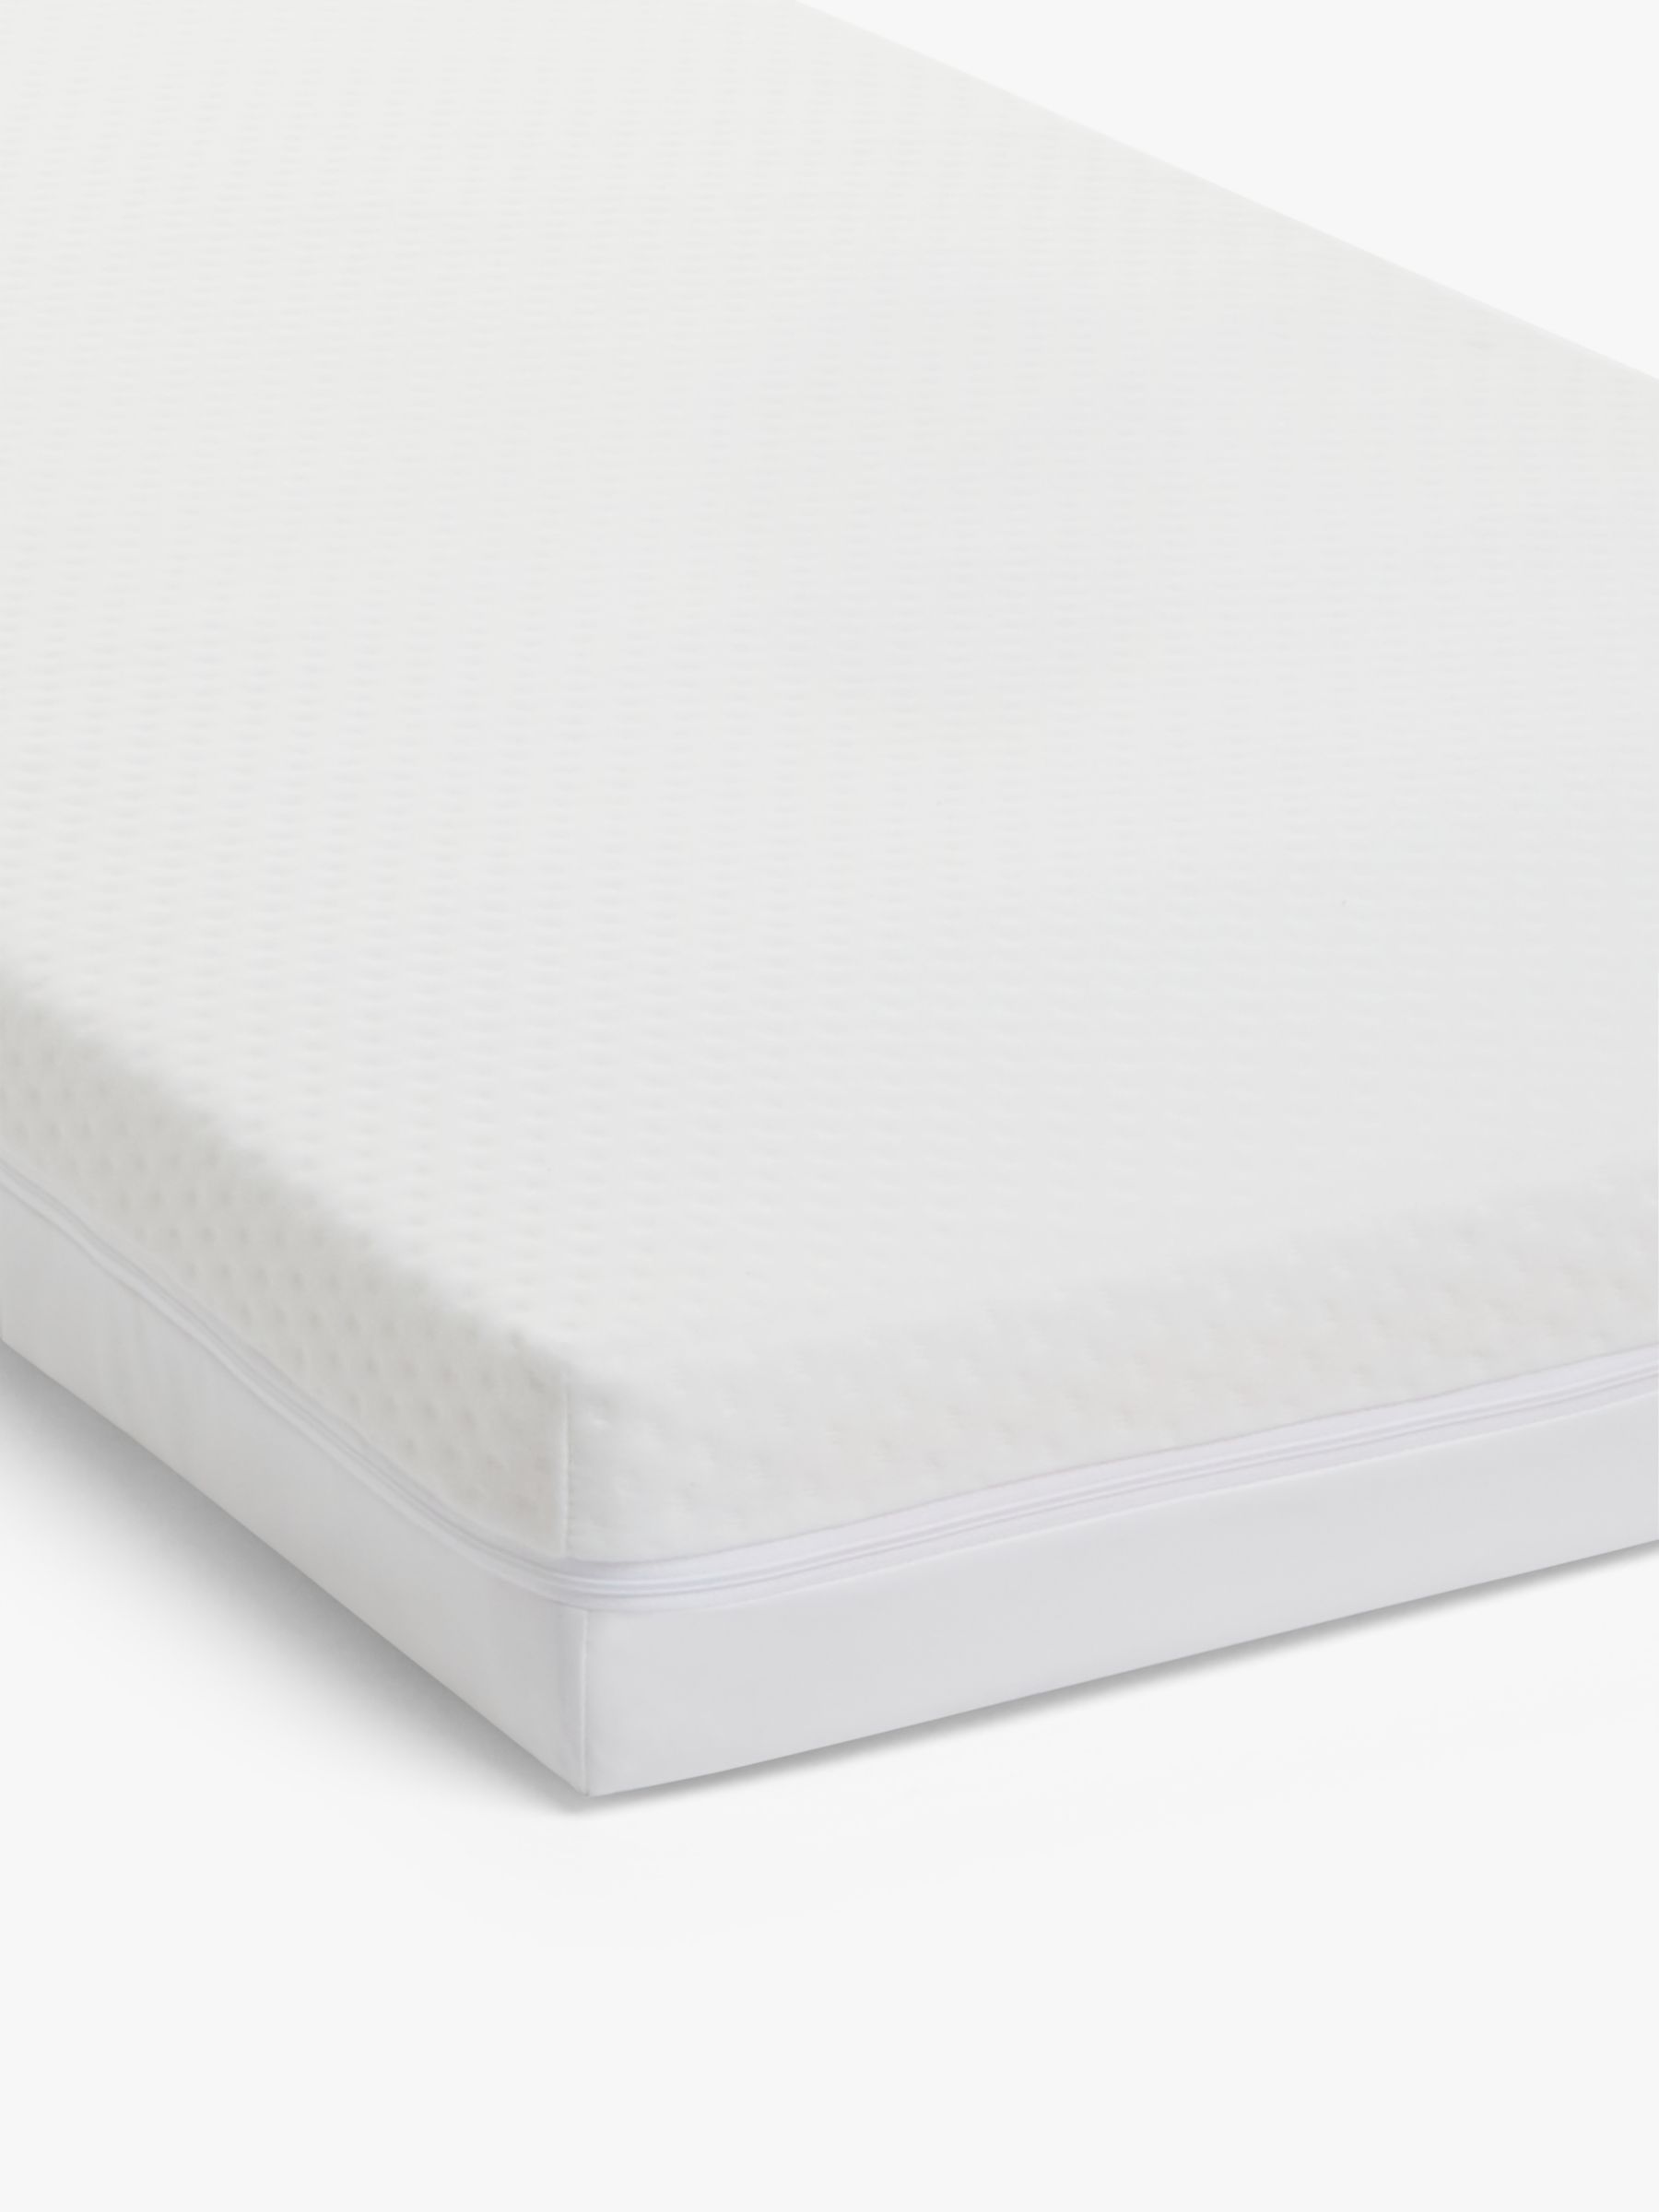 l140 x w70cm mattress